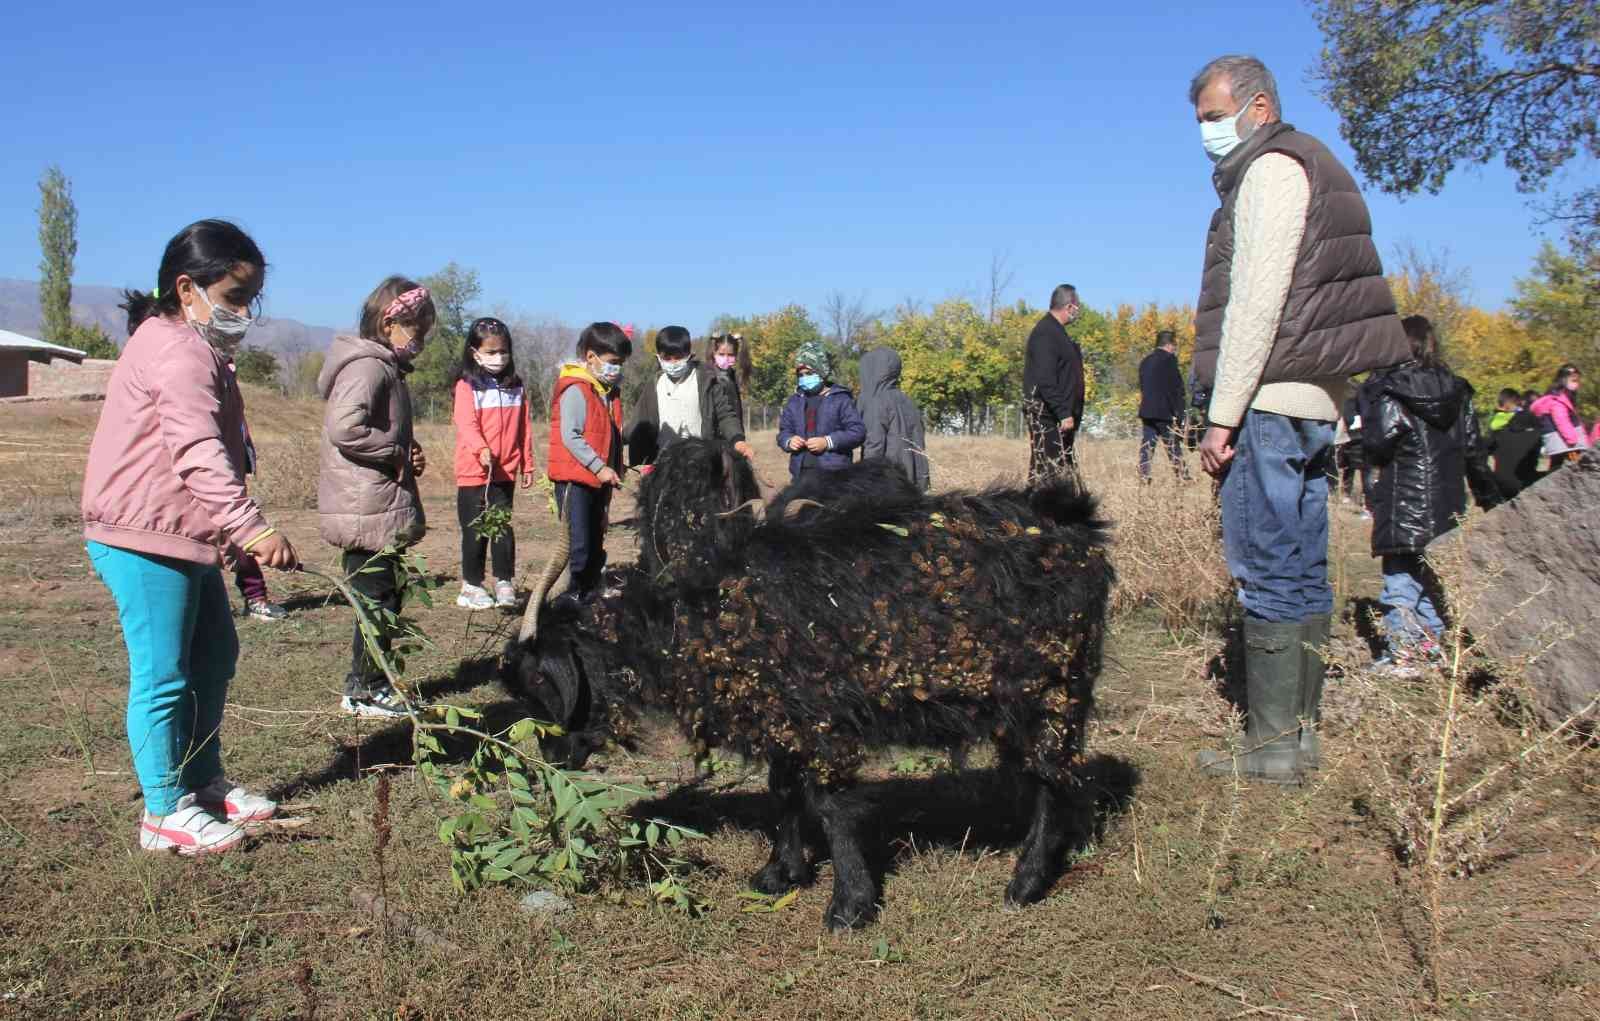 Erzincan’da minik öğrenciler çiftlikteki doğal yaşamı yerinde gördü #erzincan